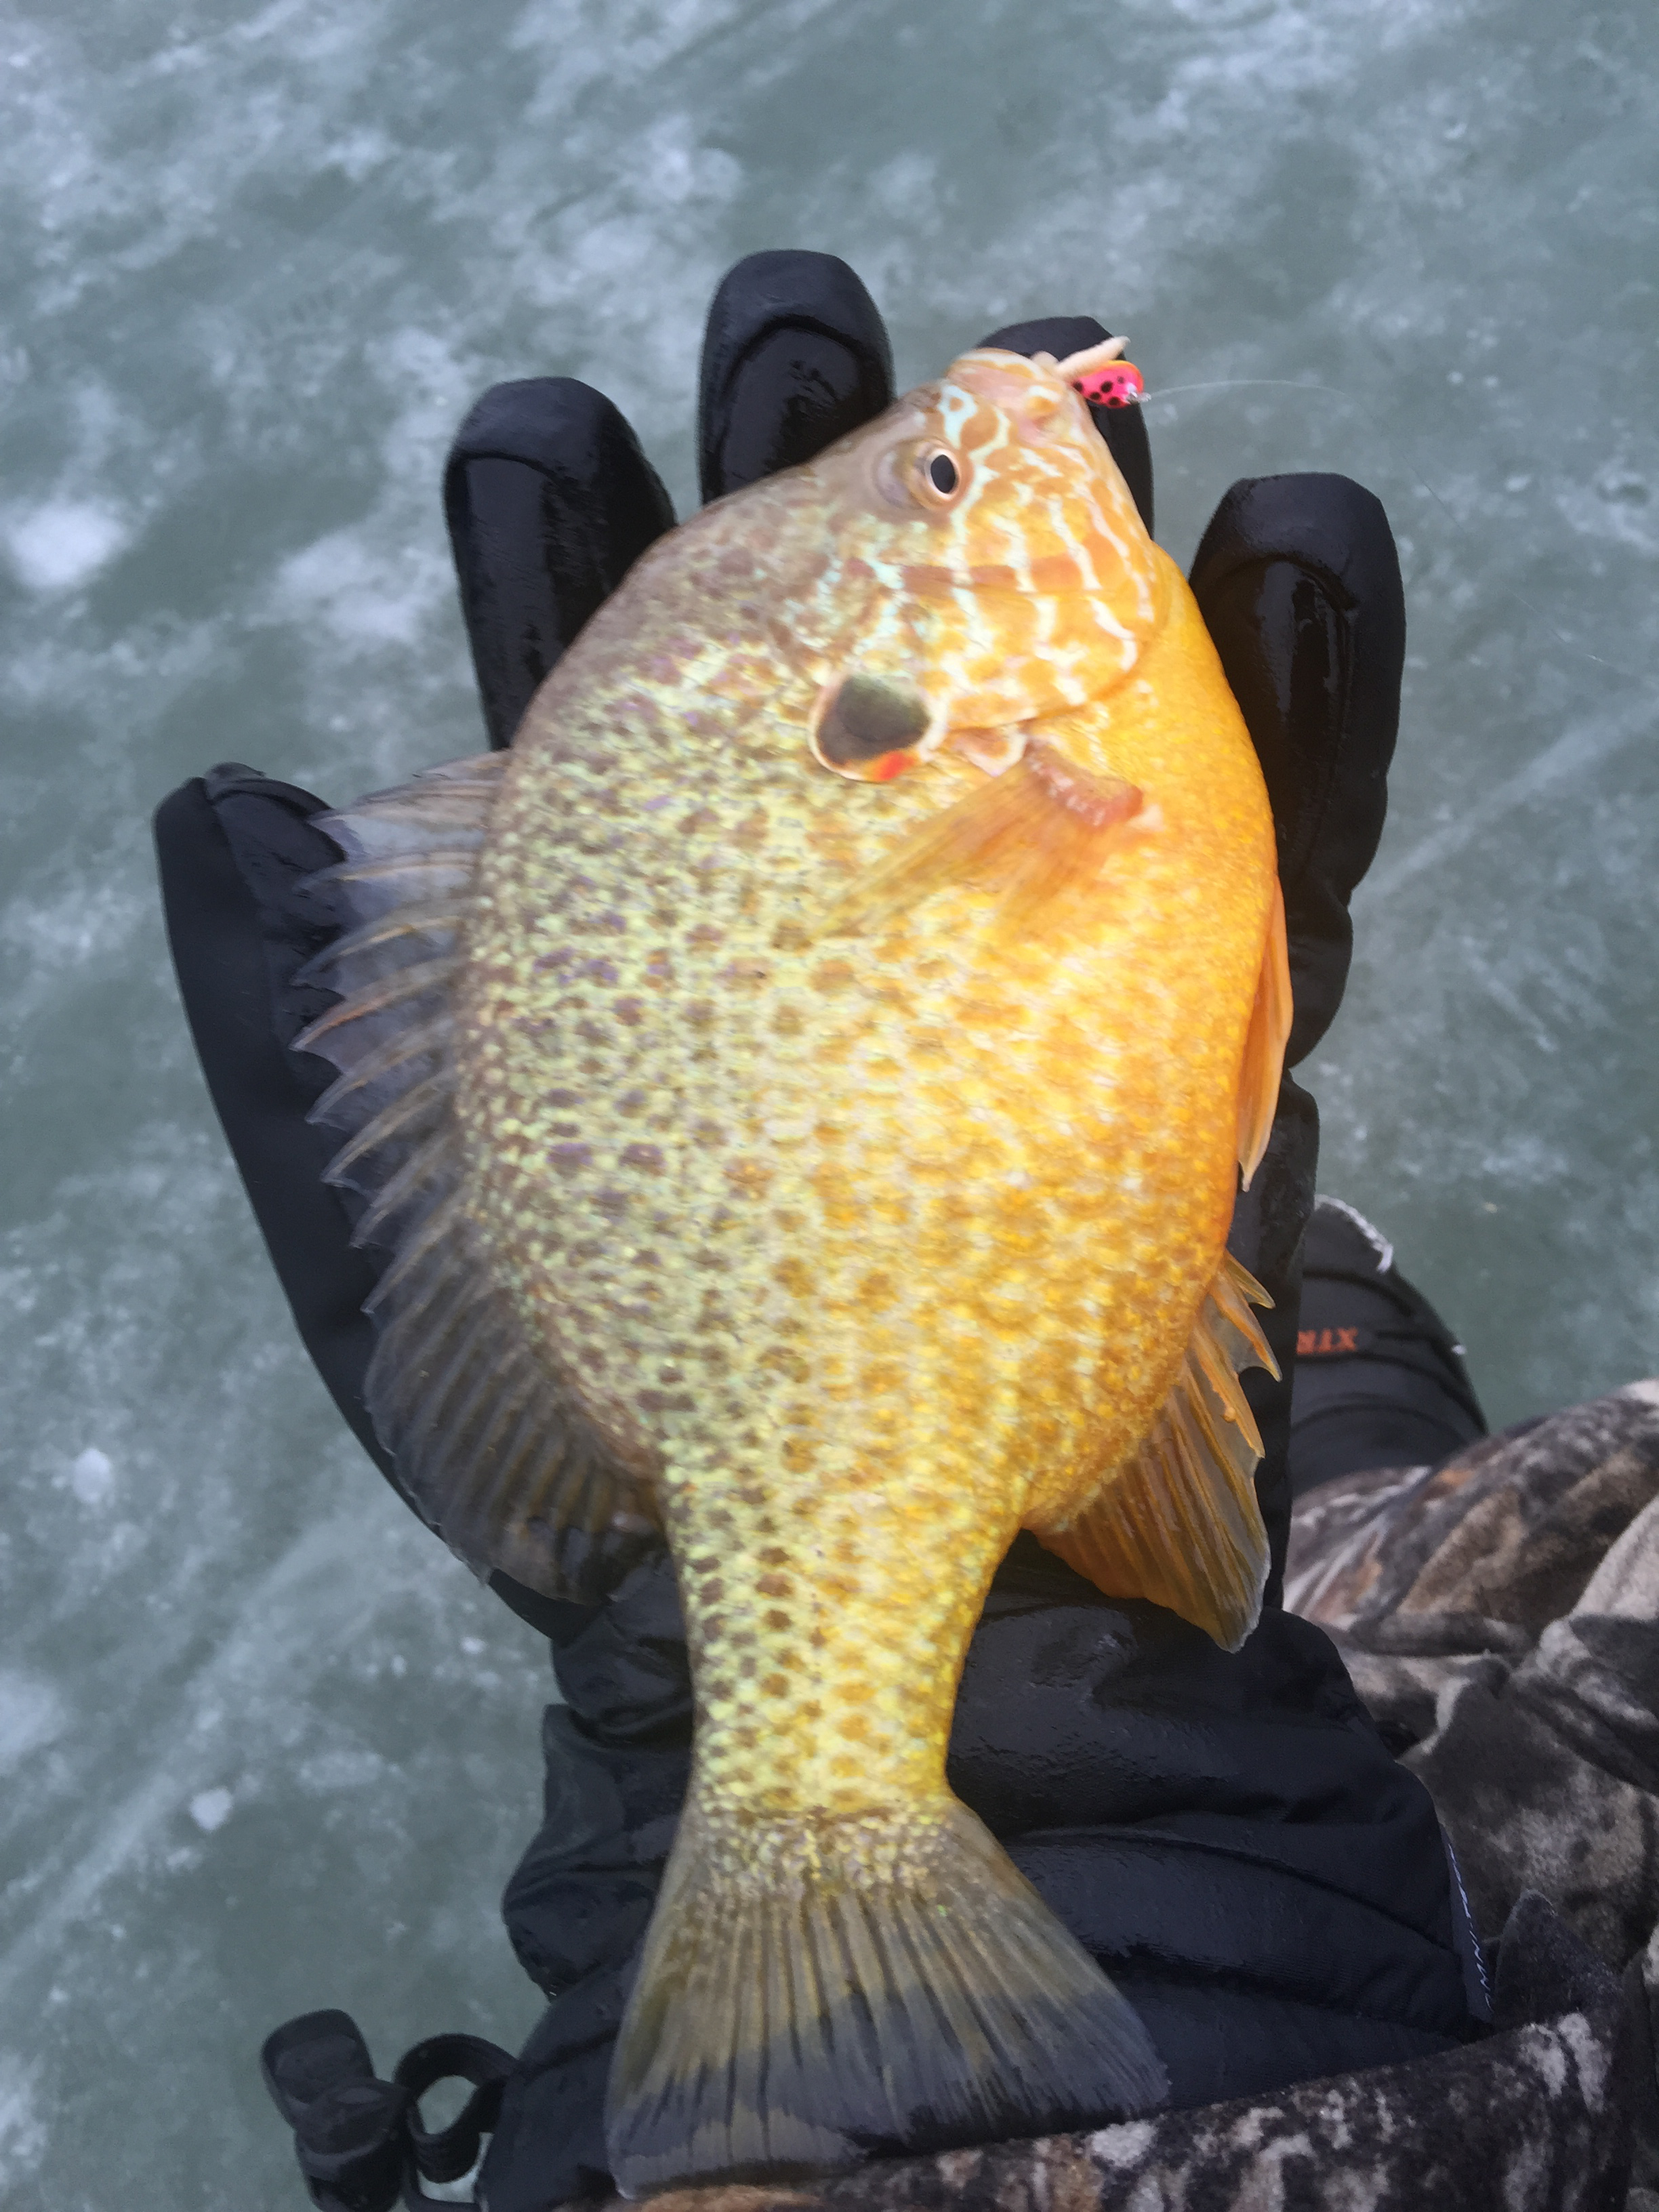 2015 01 06 ice fishing jeremy pumpkinseed sunfish